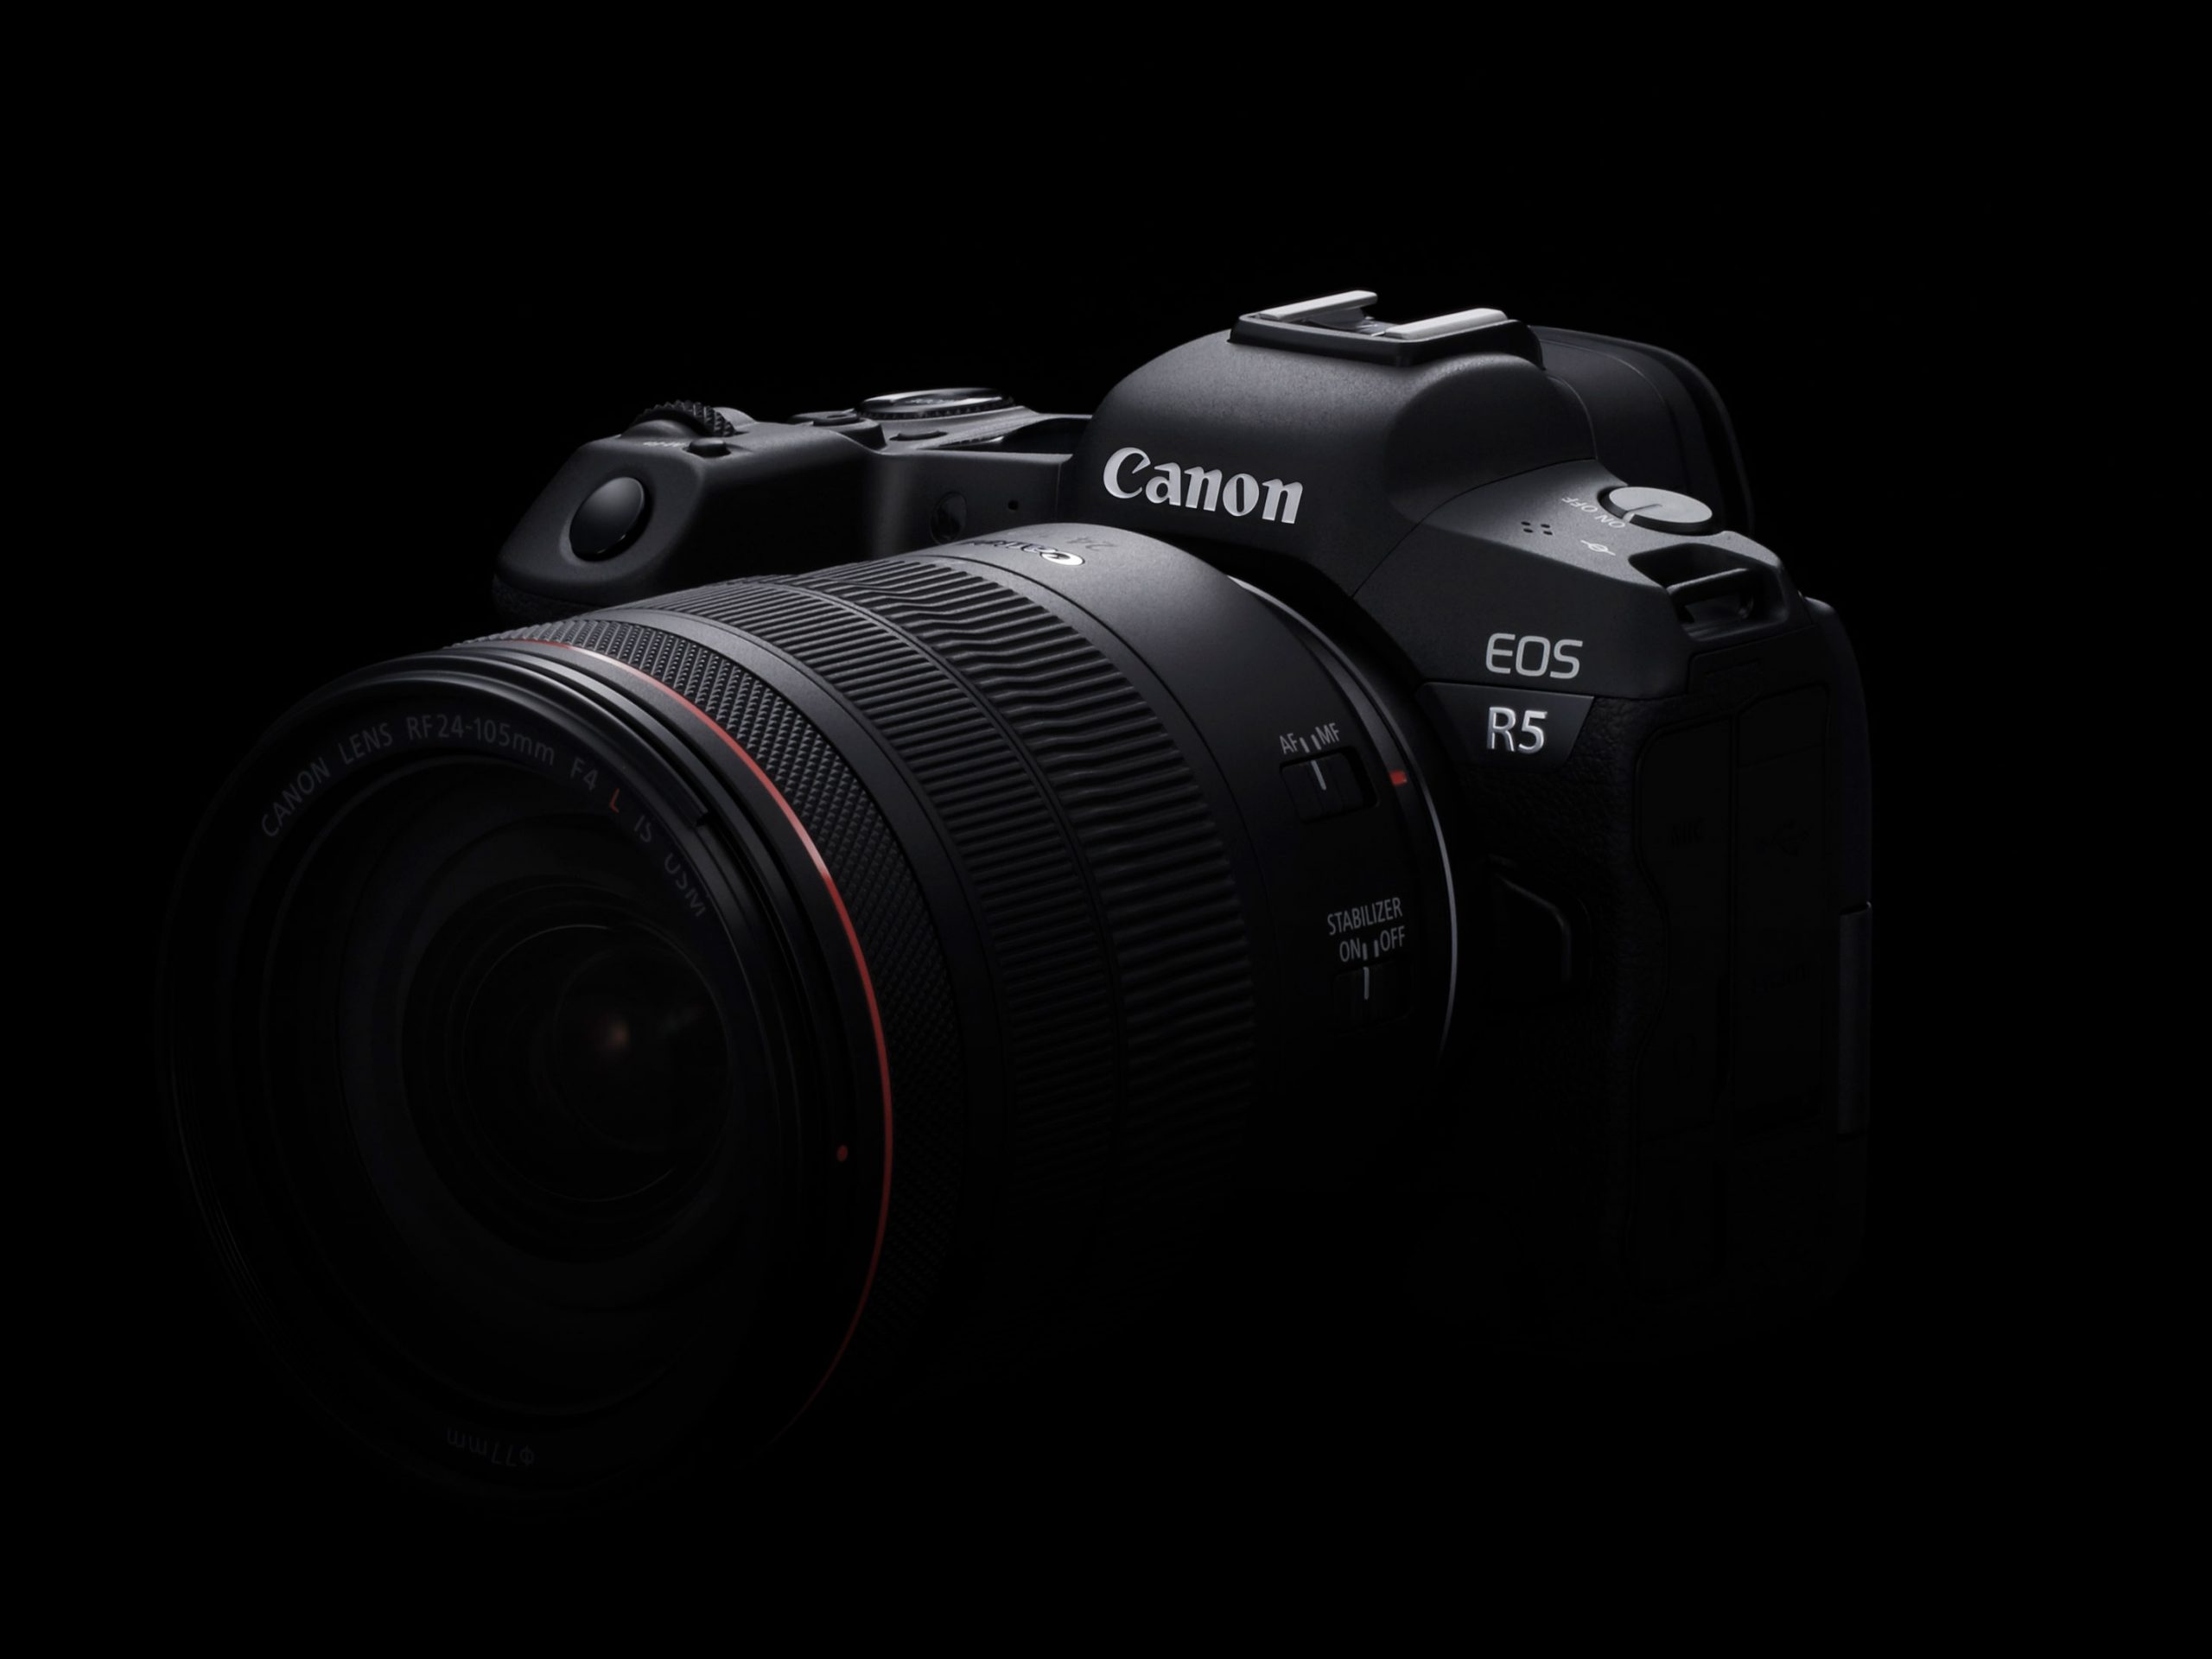 Báo cáo cho biết Canon hoãn ra mắt EOS R6 cho tới tháng 7